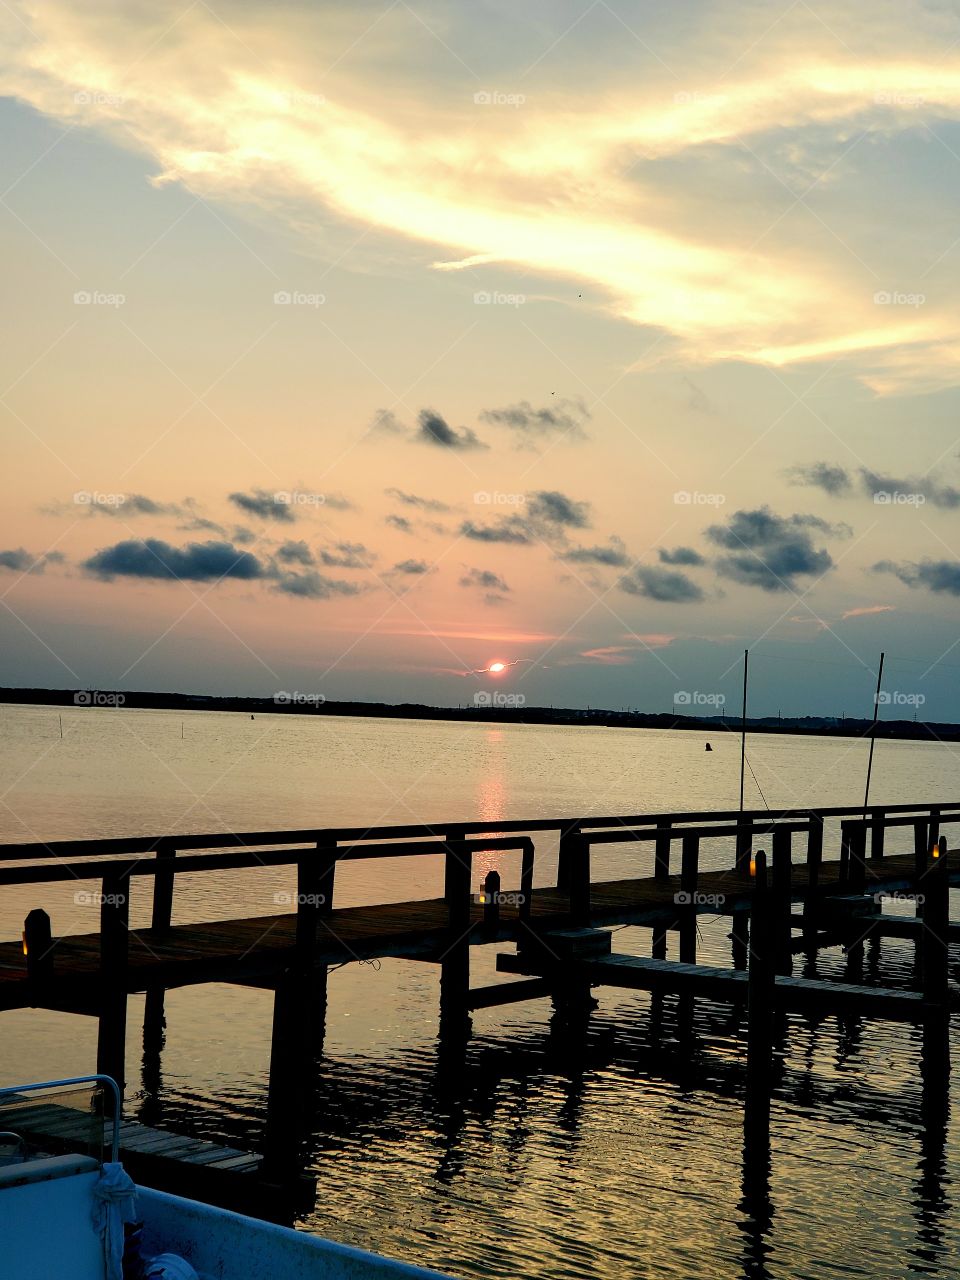 View of Chincoteague Bay at sunset